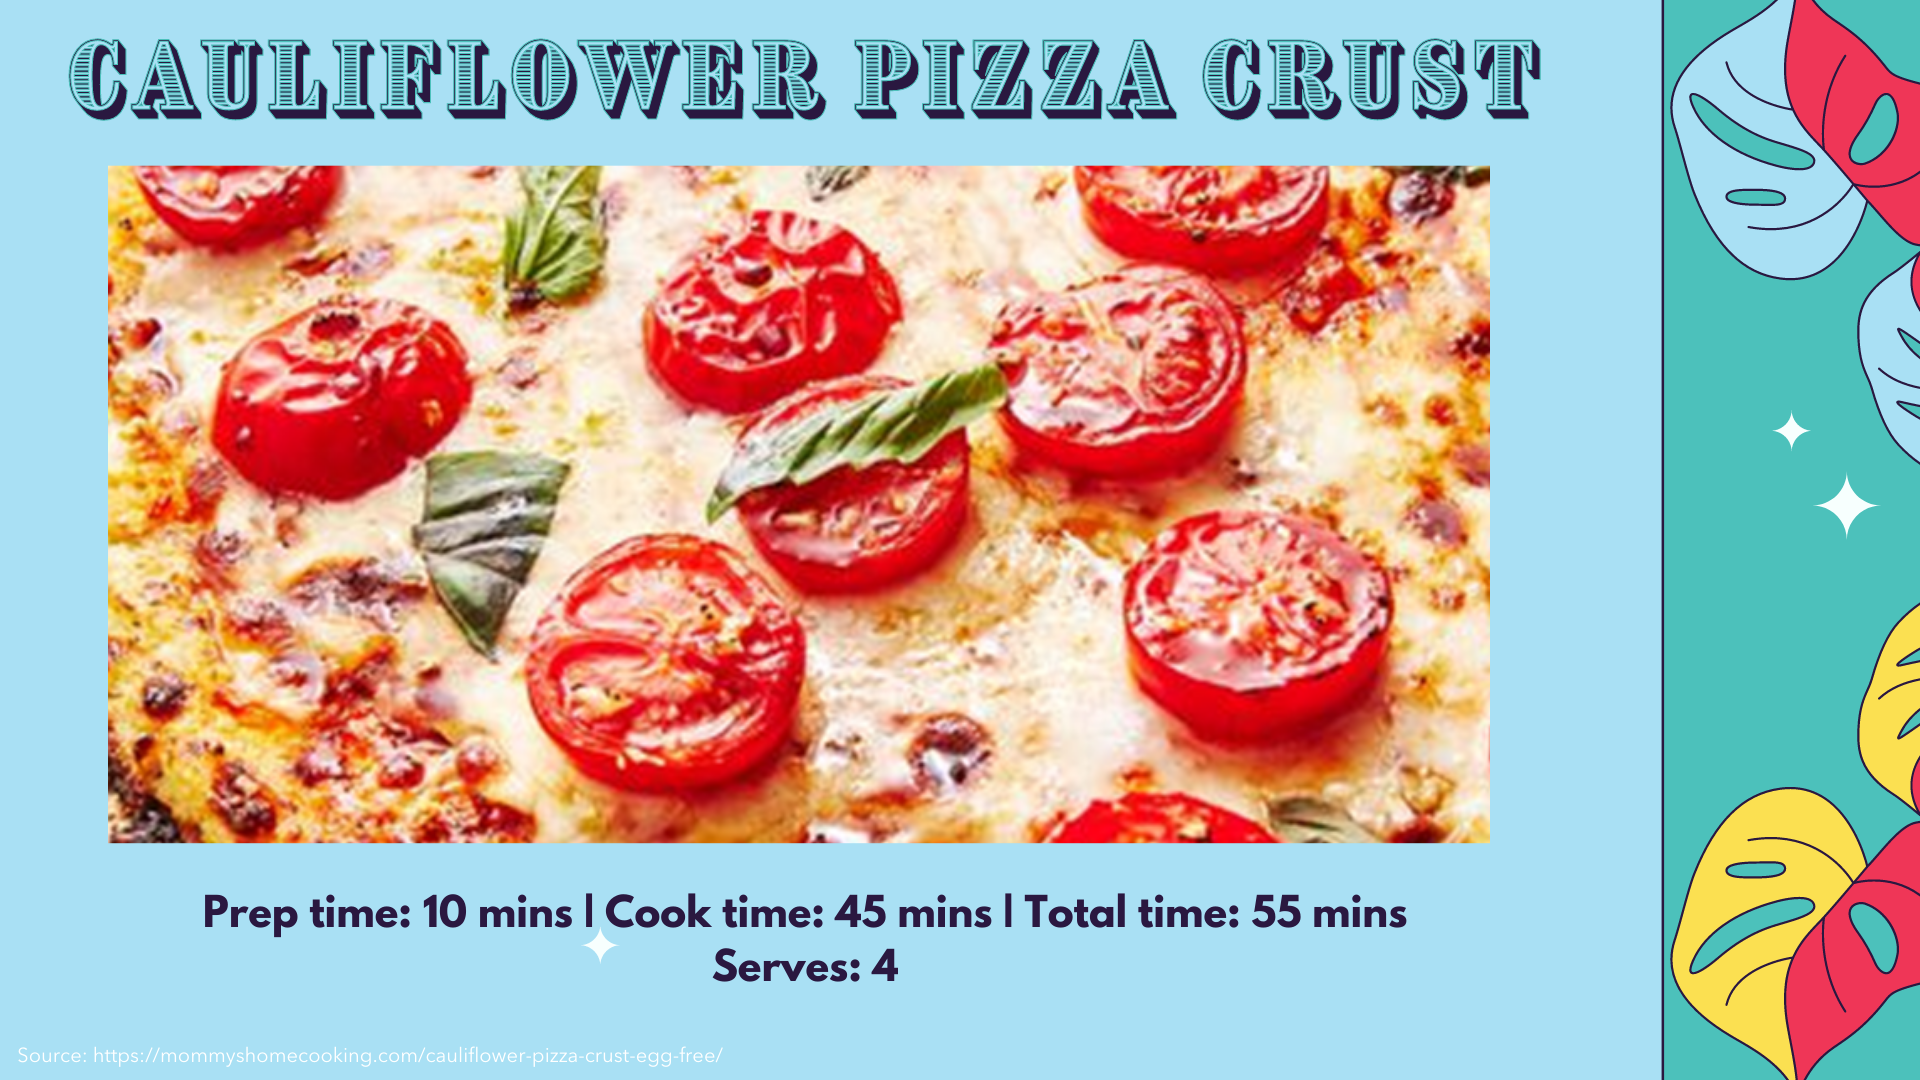 Cauliflower pizza crust recipe